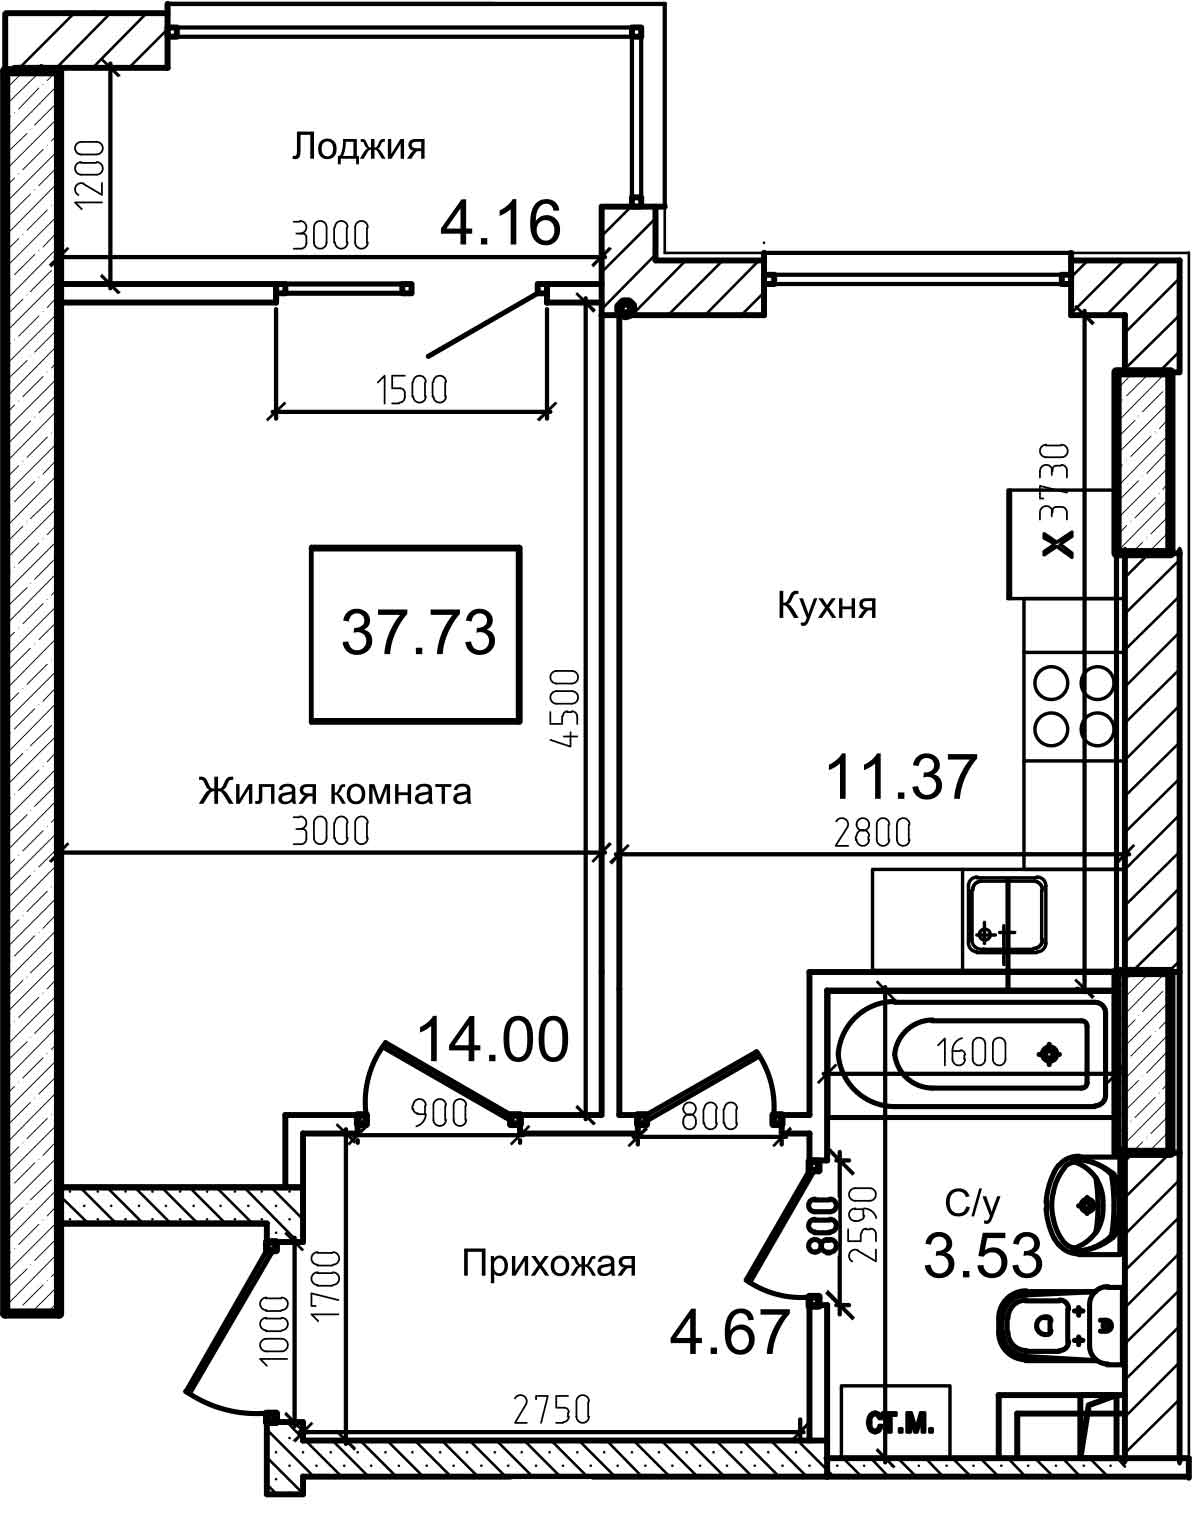 Планування 1-к квартира площею 37.3м2, AB-08-05/00011.